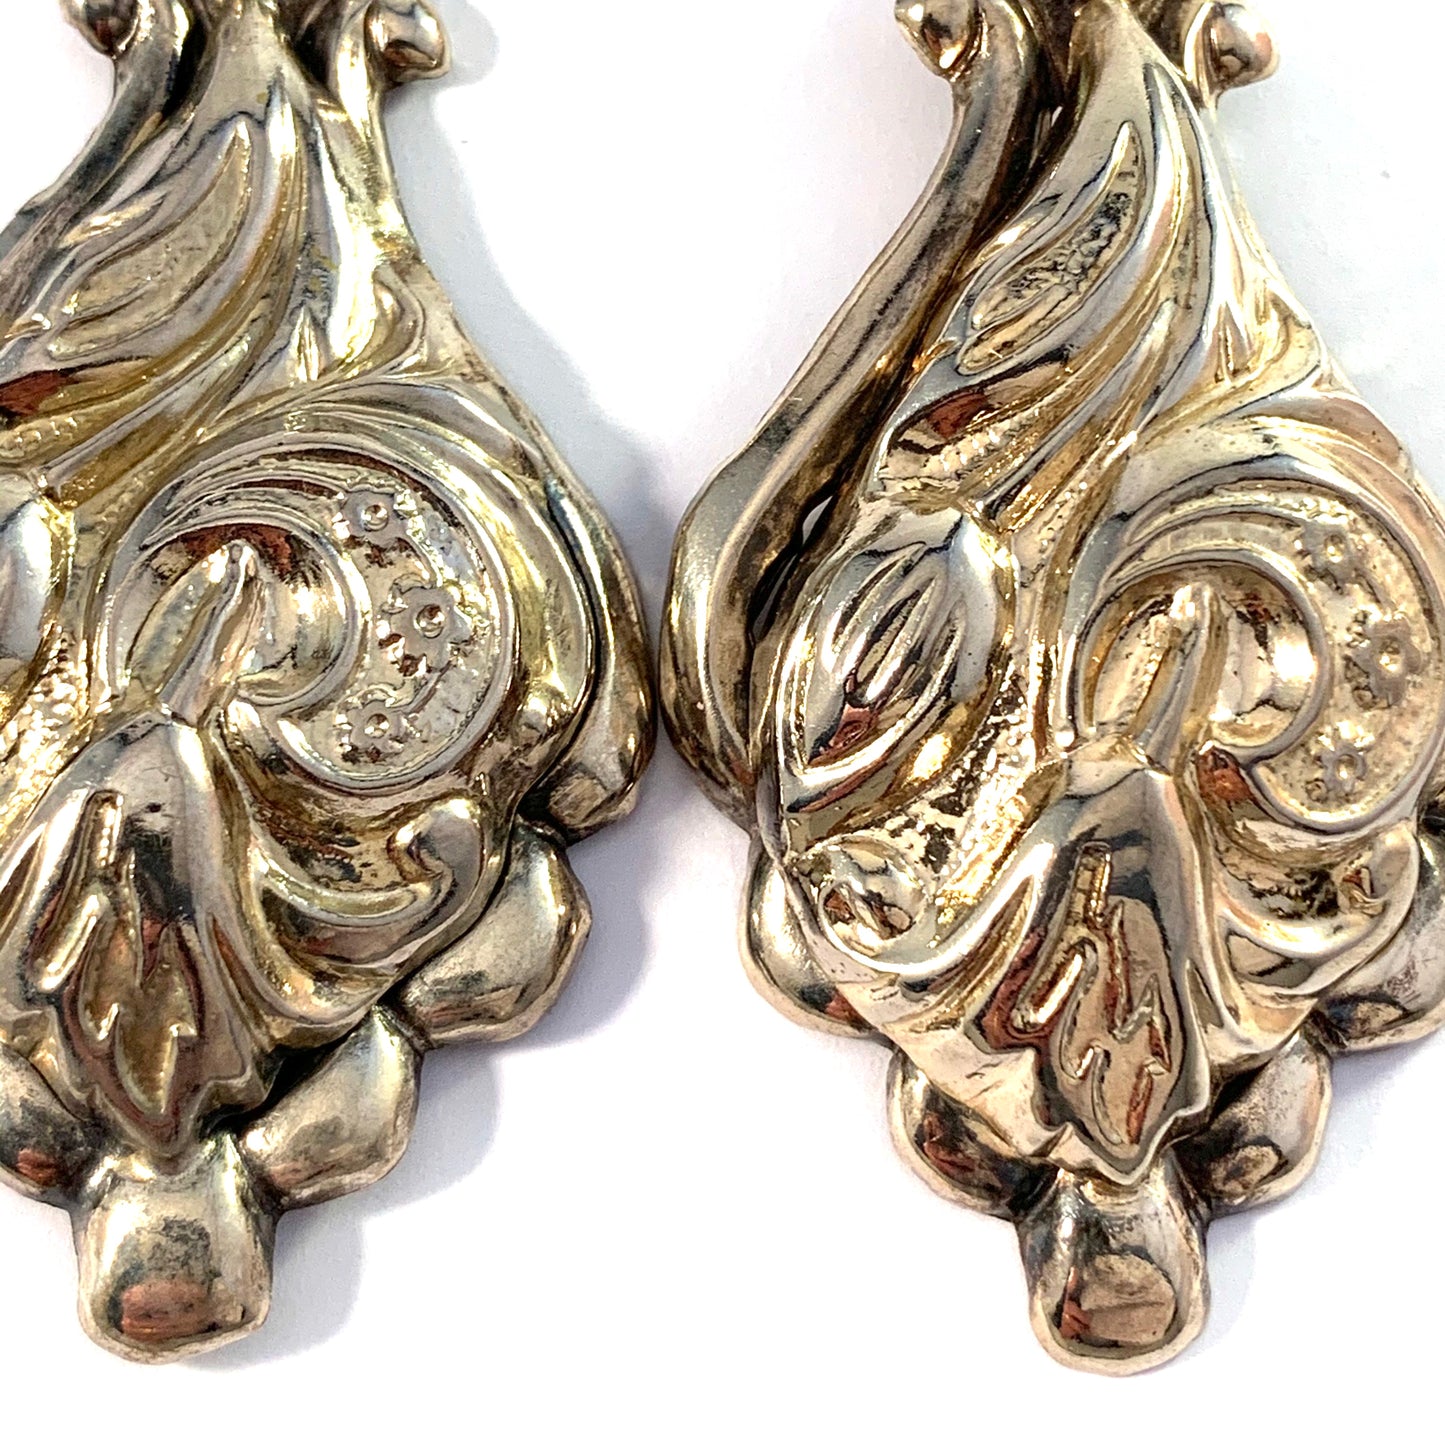 Victorian c 1890 Huge Stamped Metal Earrings.